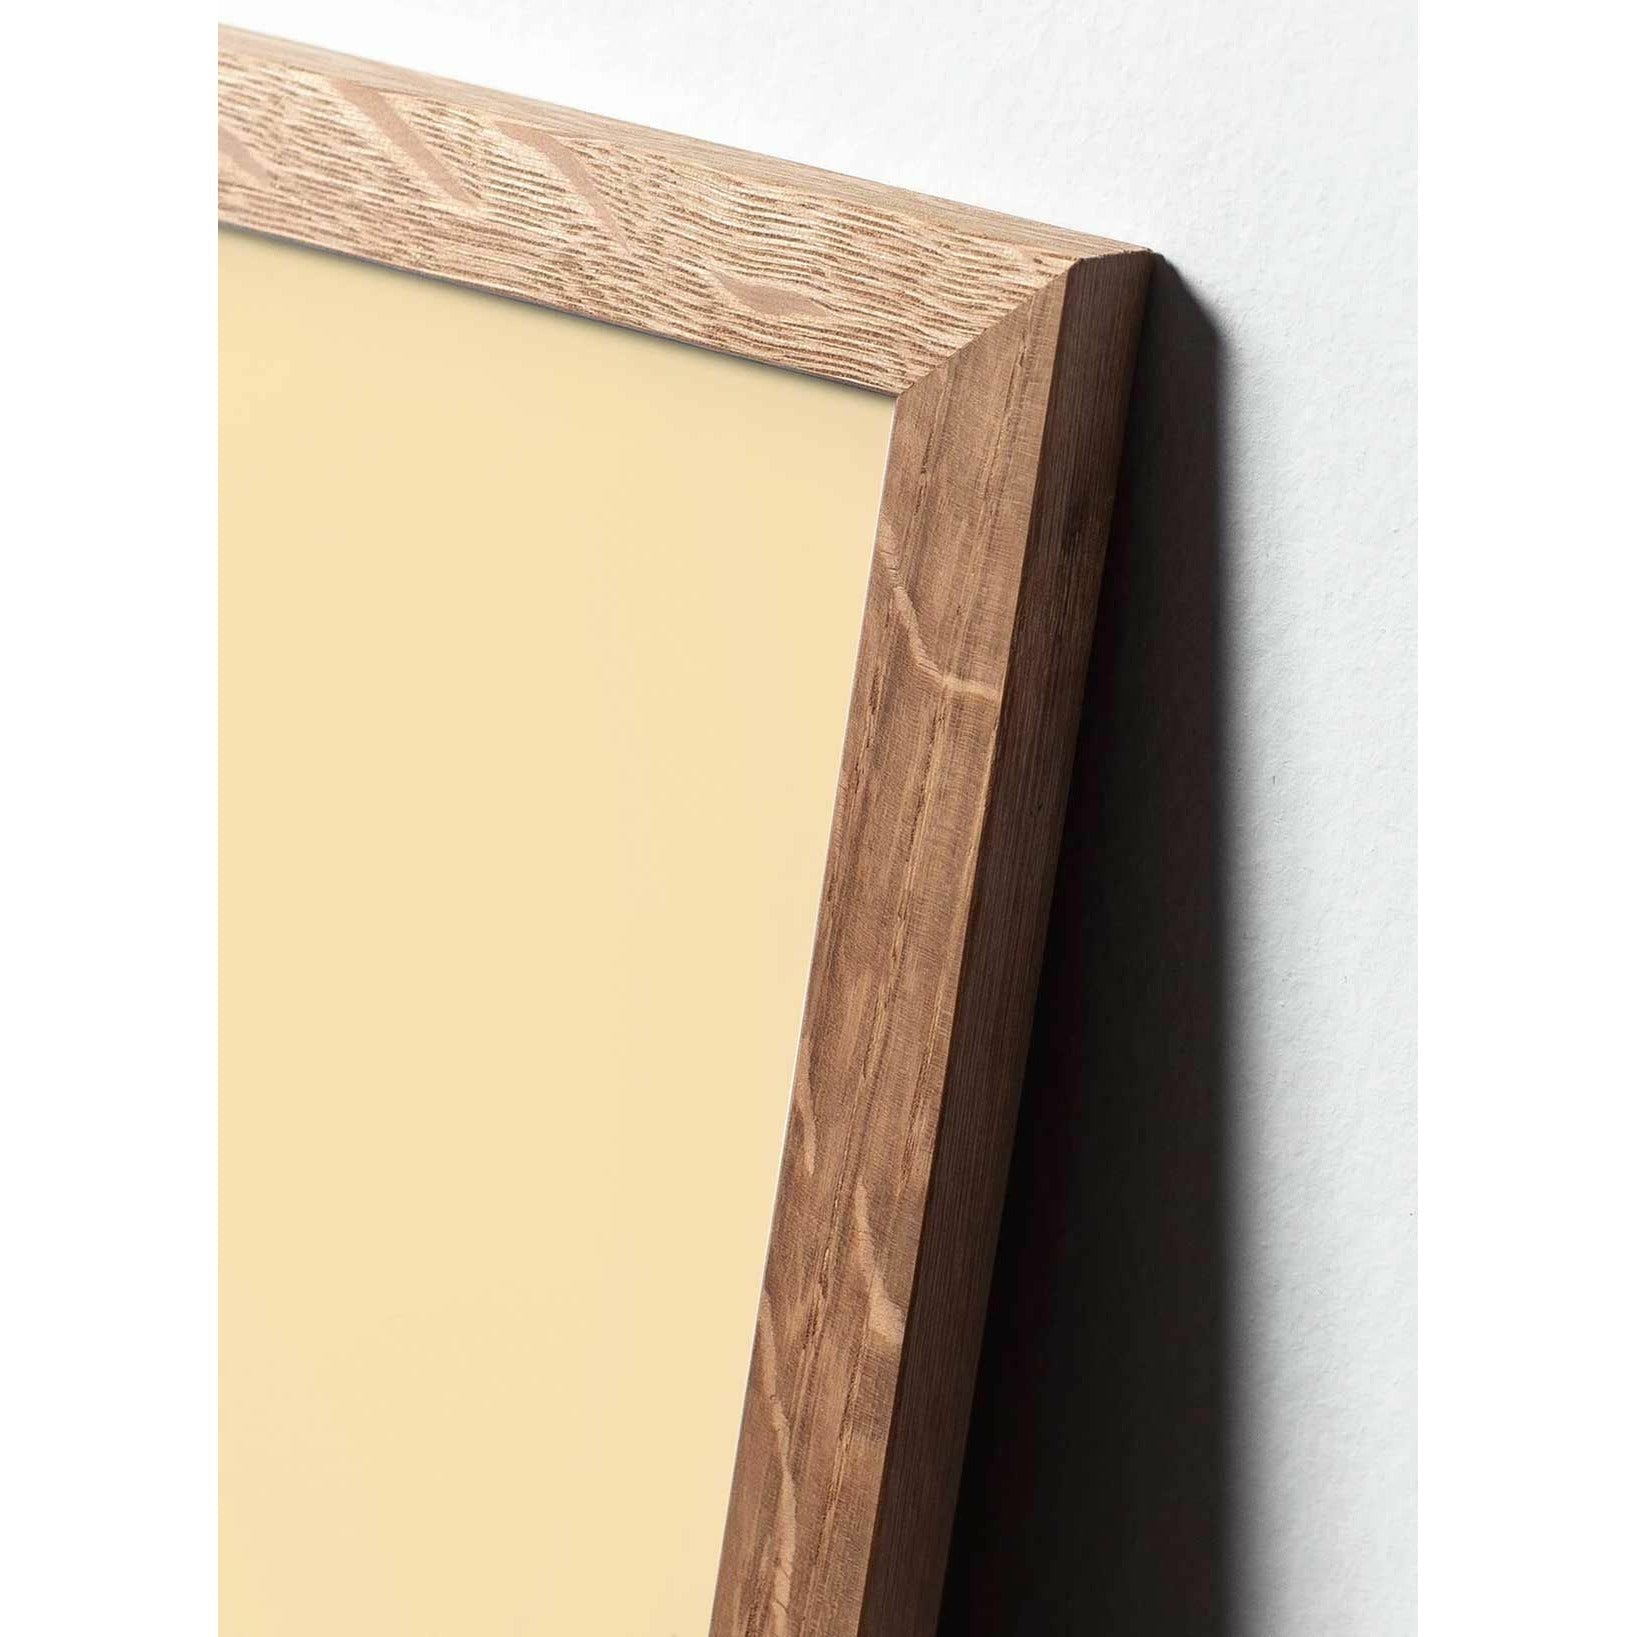 brainchild Pine Cone Classic Poster, frame gemaakt van licht hout 30x40 cm, rode achtergrond